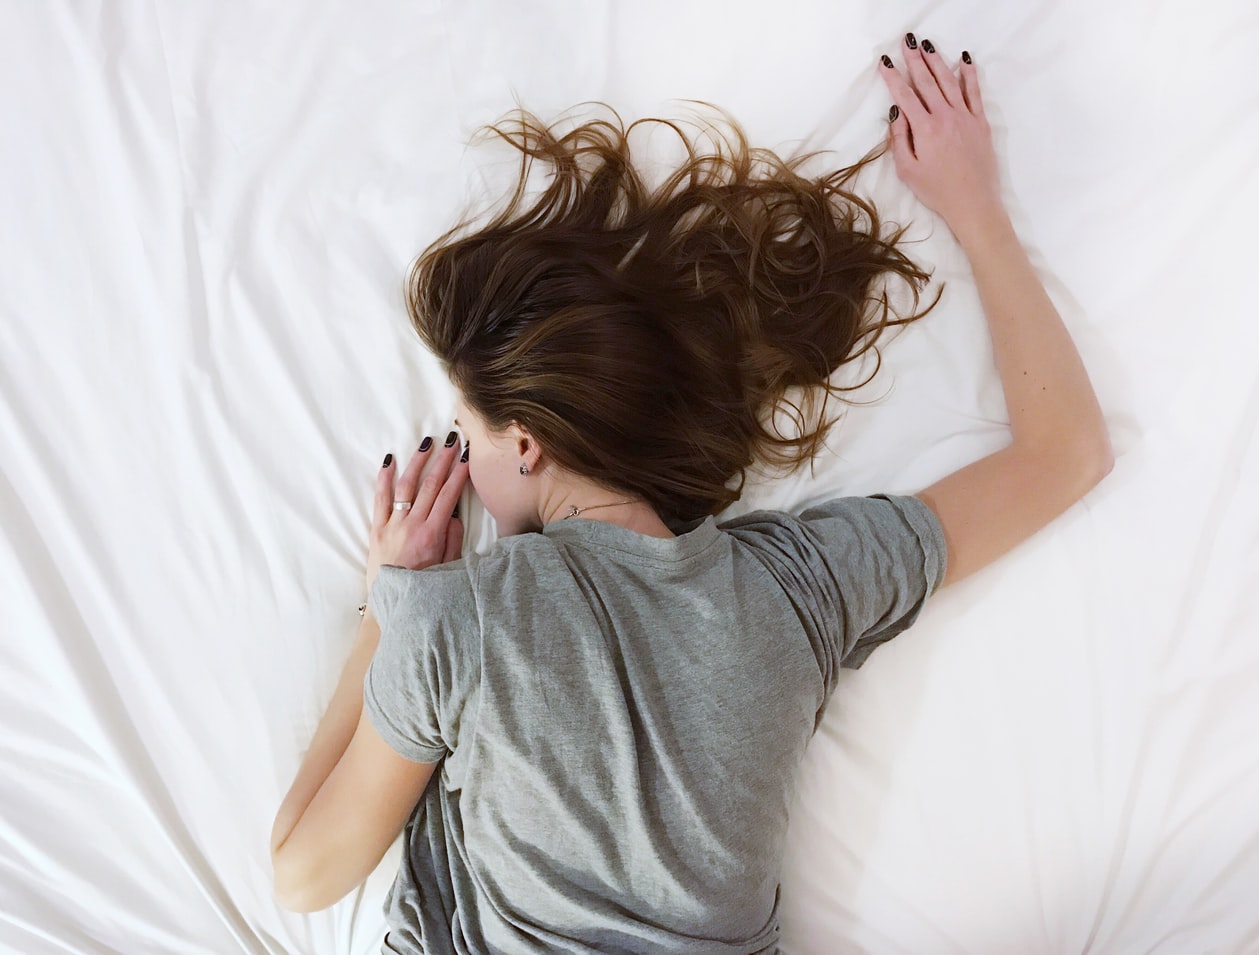 Ύπνος χωρίς μαξιλάρι: Τα πλεονεκτήματα που δεν γνωρίζατε